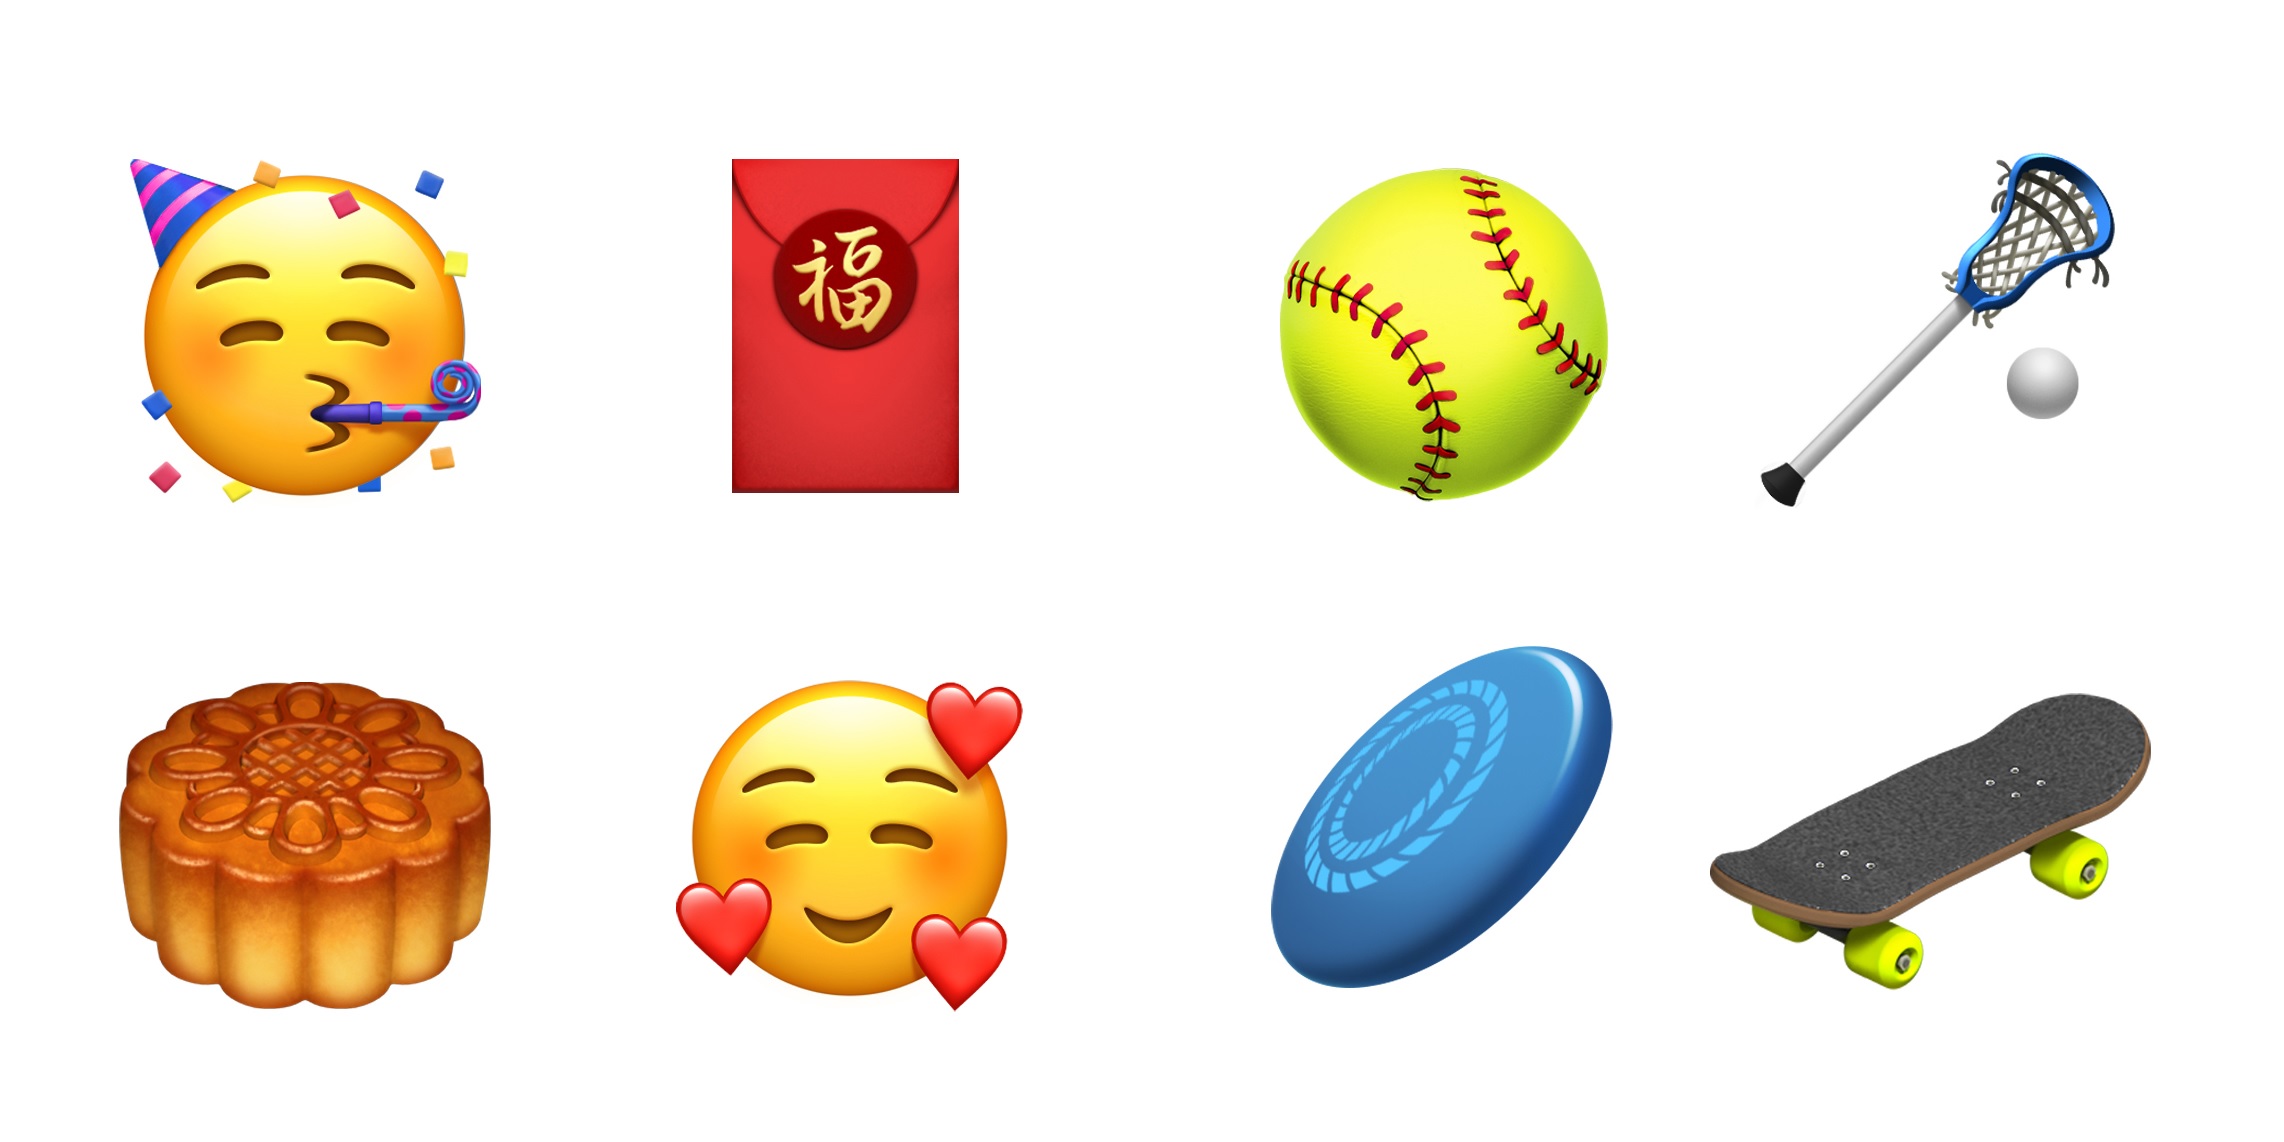 add emojis on mac